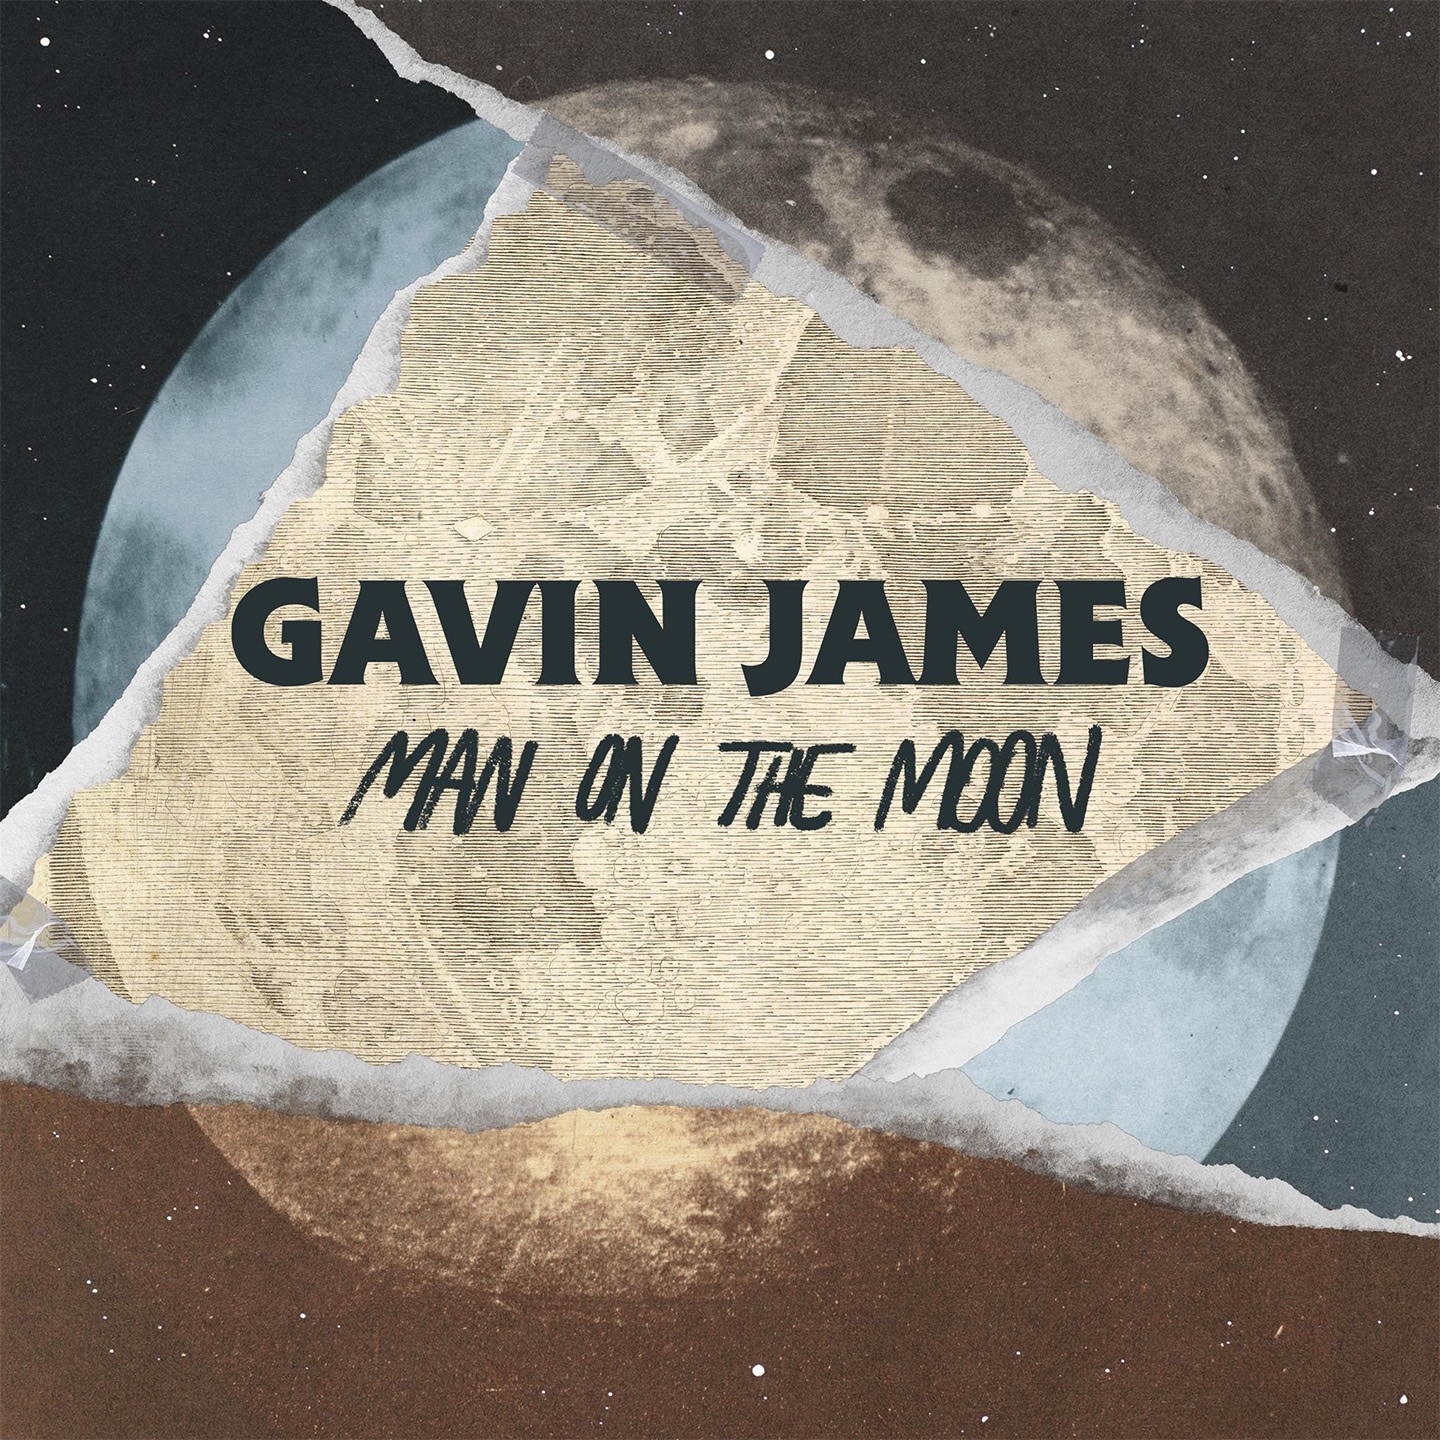 Gavin James - Man on the Moon - Single